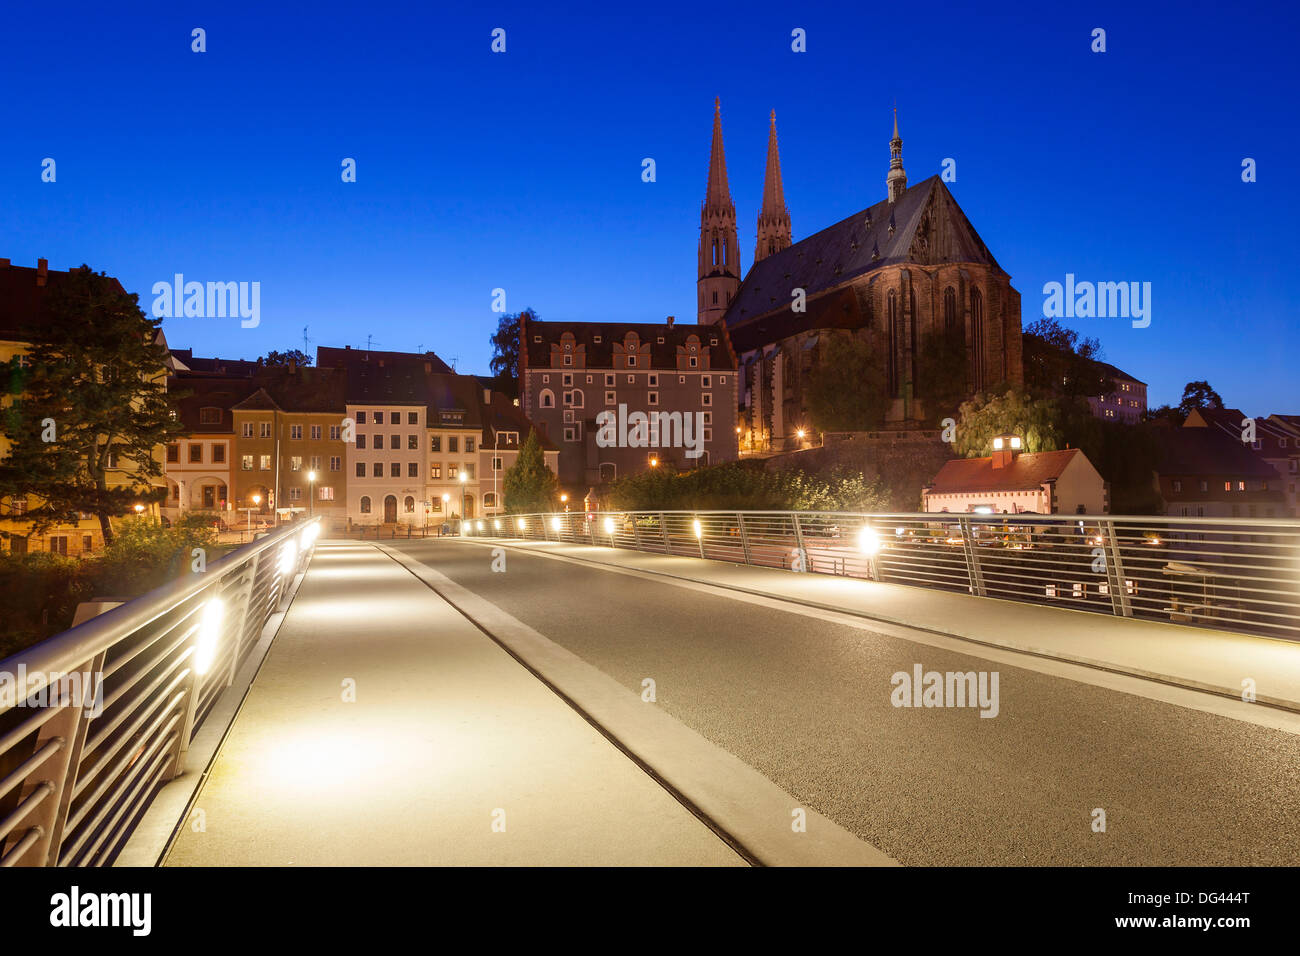 Allemagne/Saxe/Görlitz Görlitz, vue sur la ville avec la 'nuit' Peterskirche, 03 Oct 2013 Banque D'Images